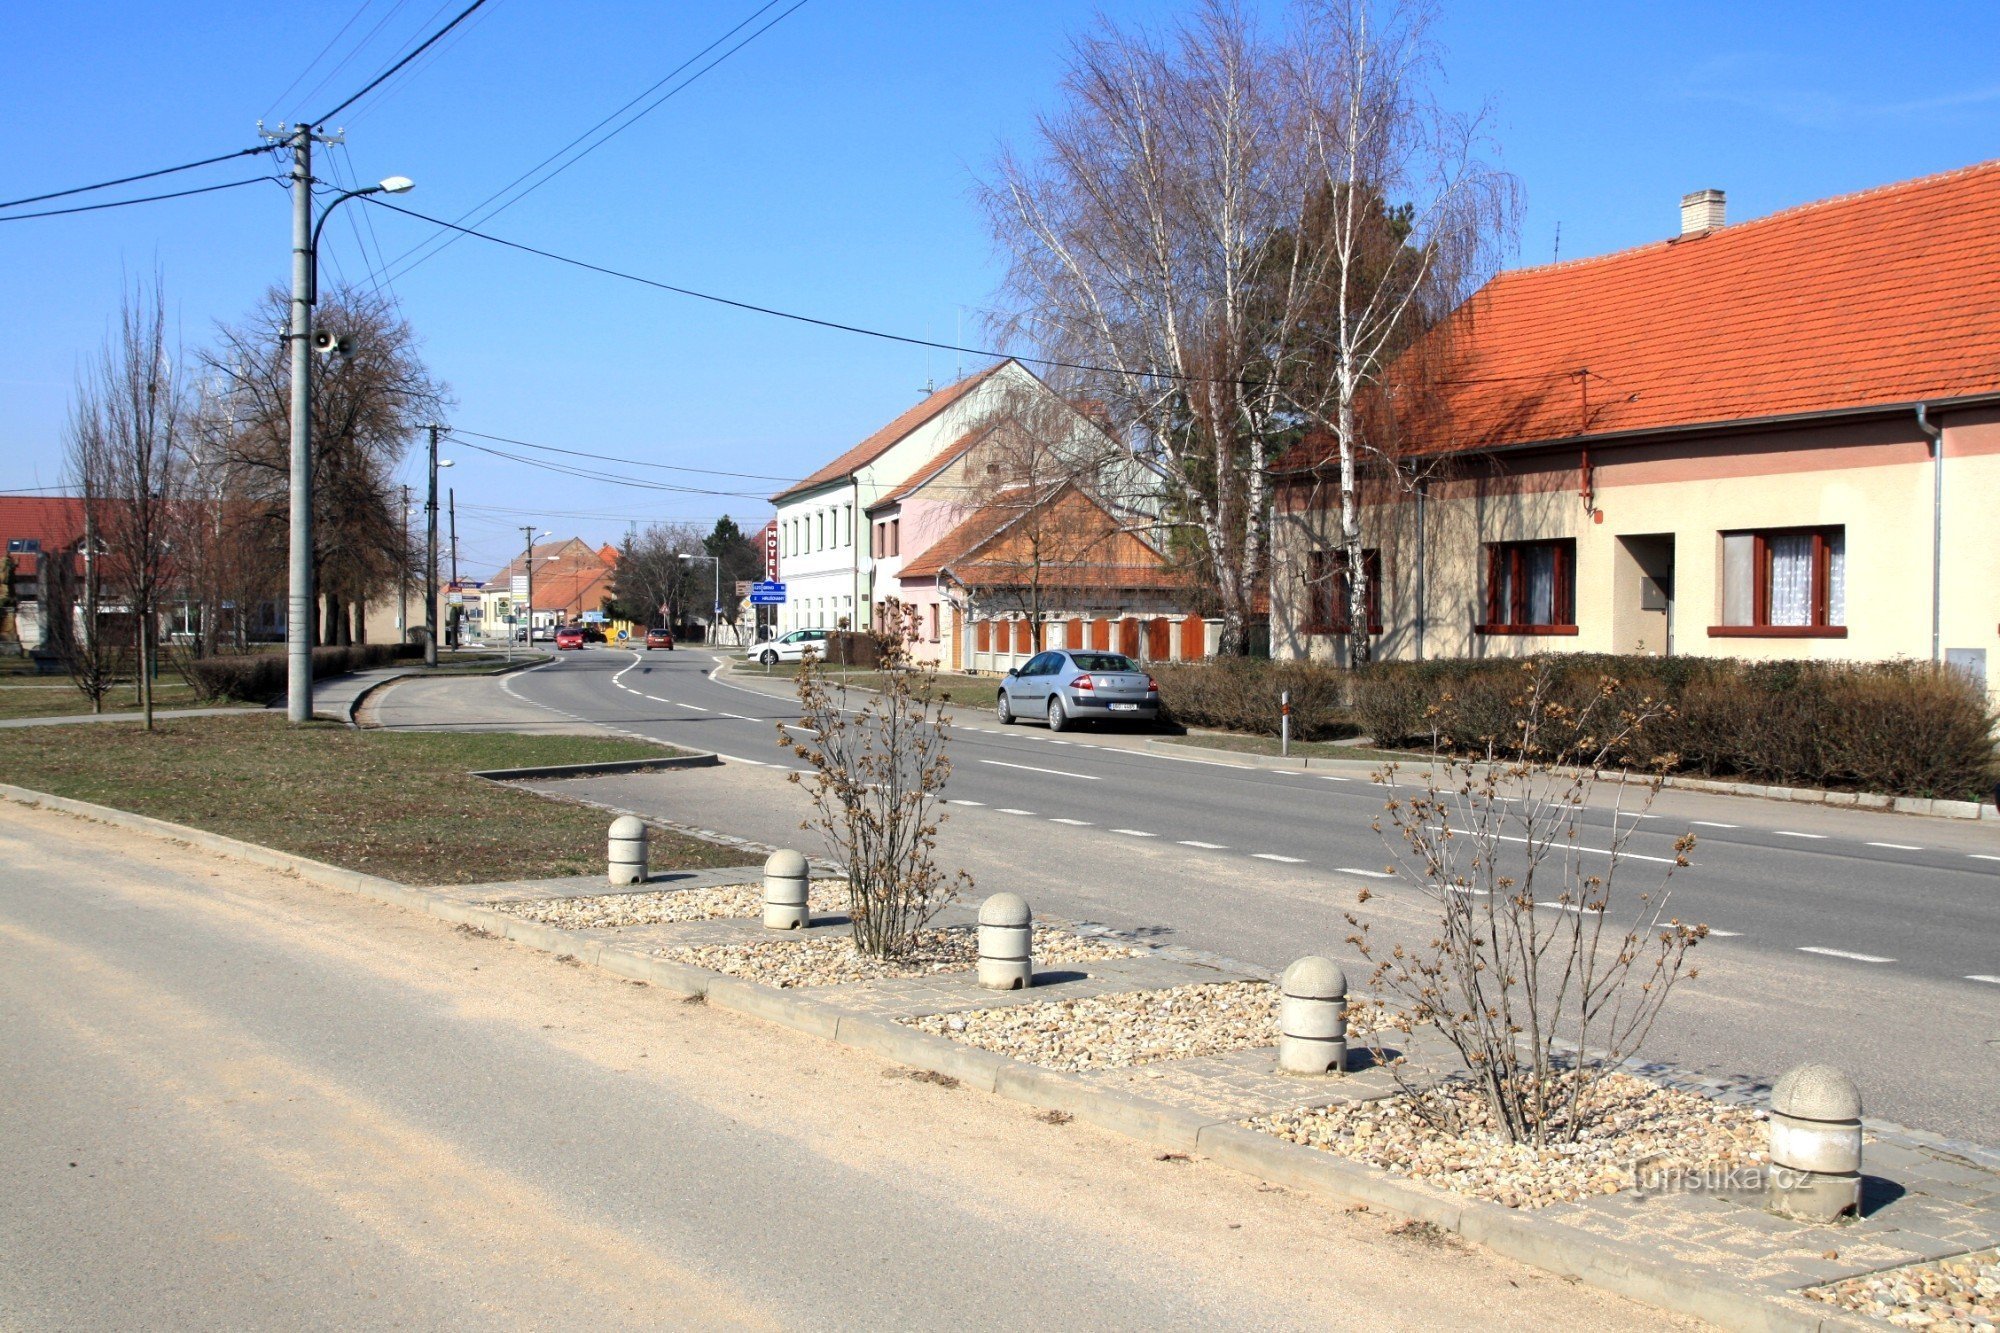 The main street in Vojkovice